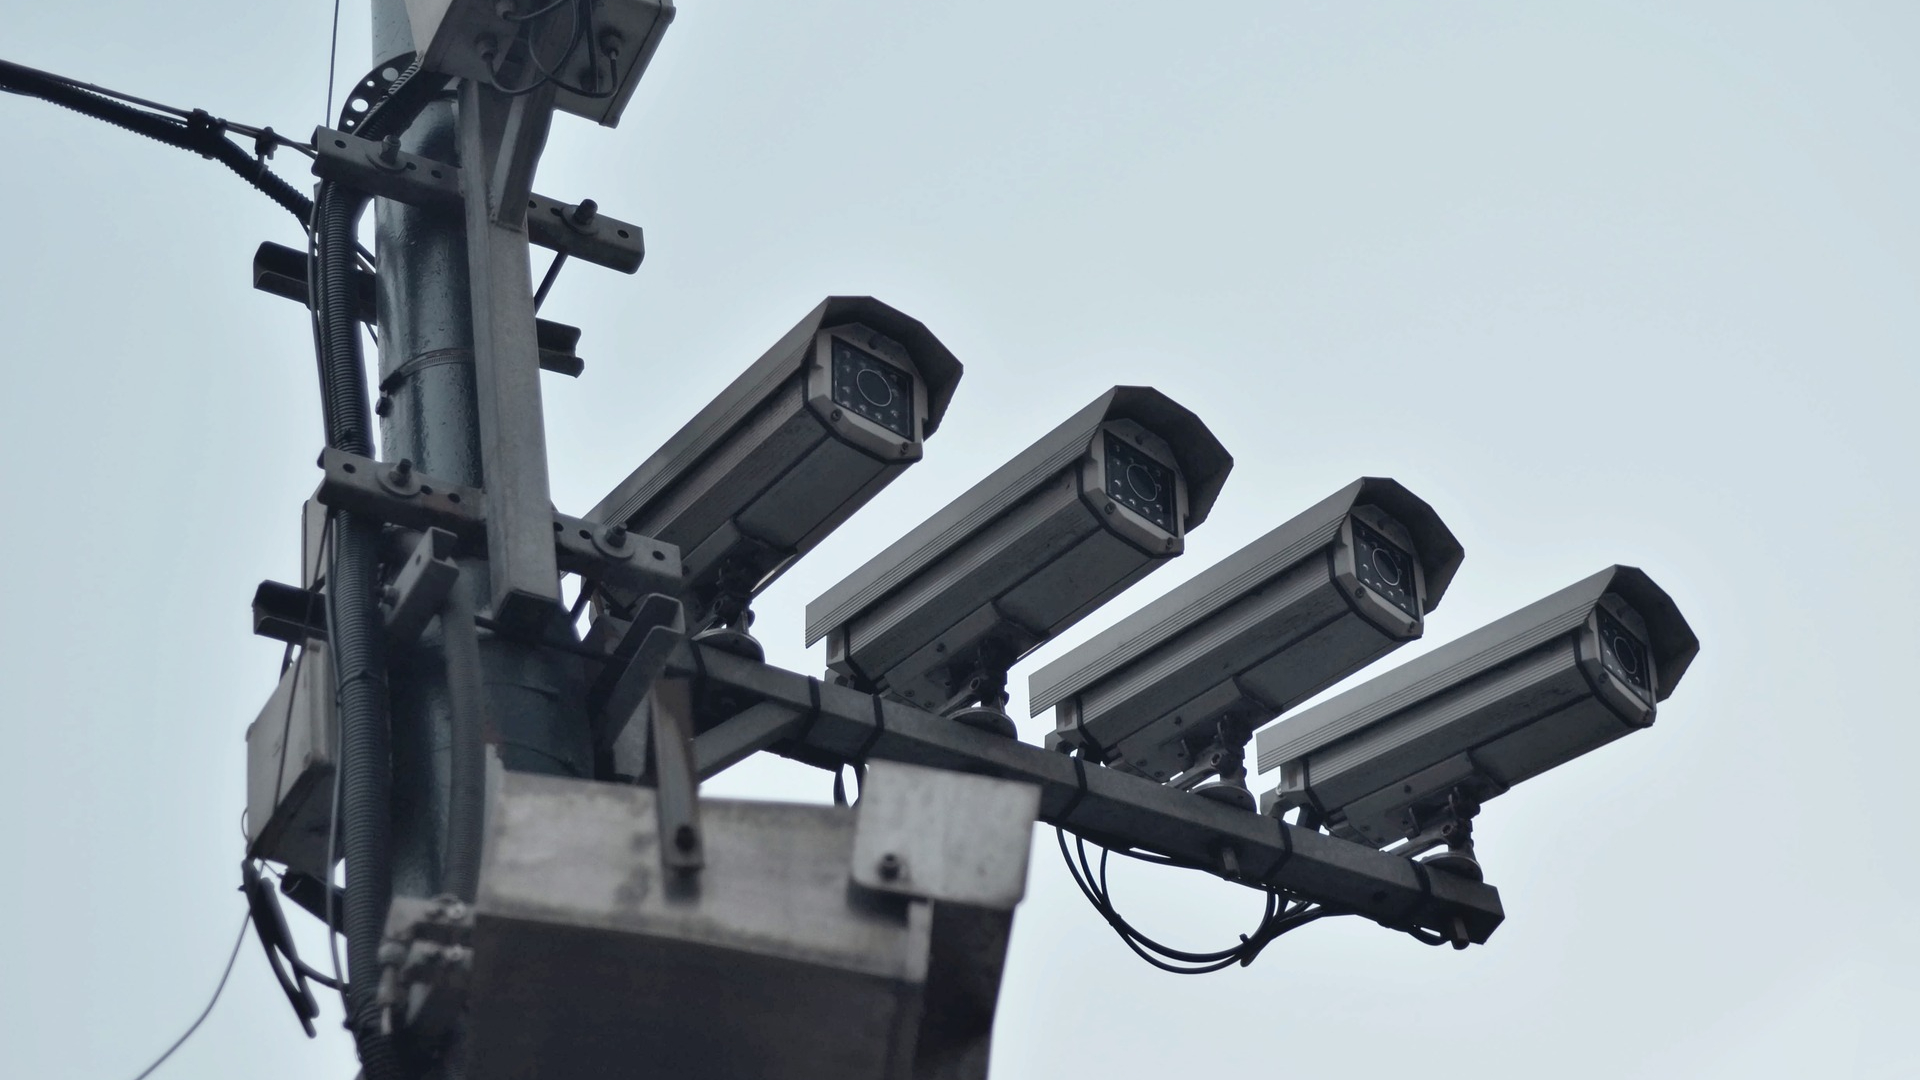 caméra surveillance // Source : vjkombajn via Pixabay